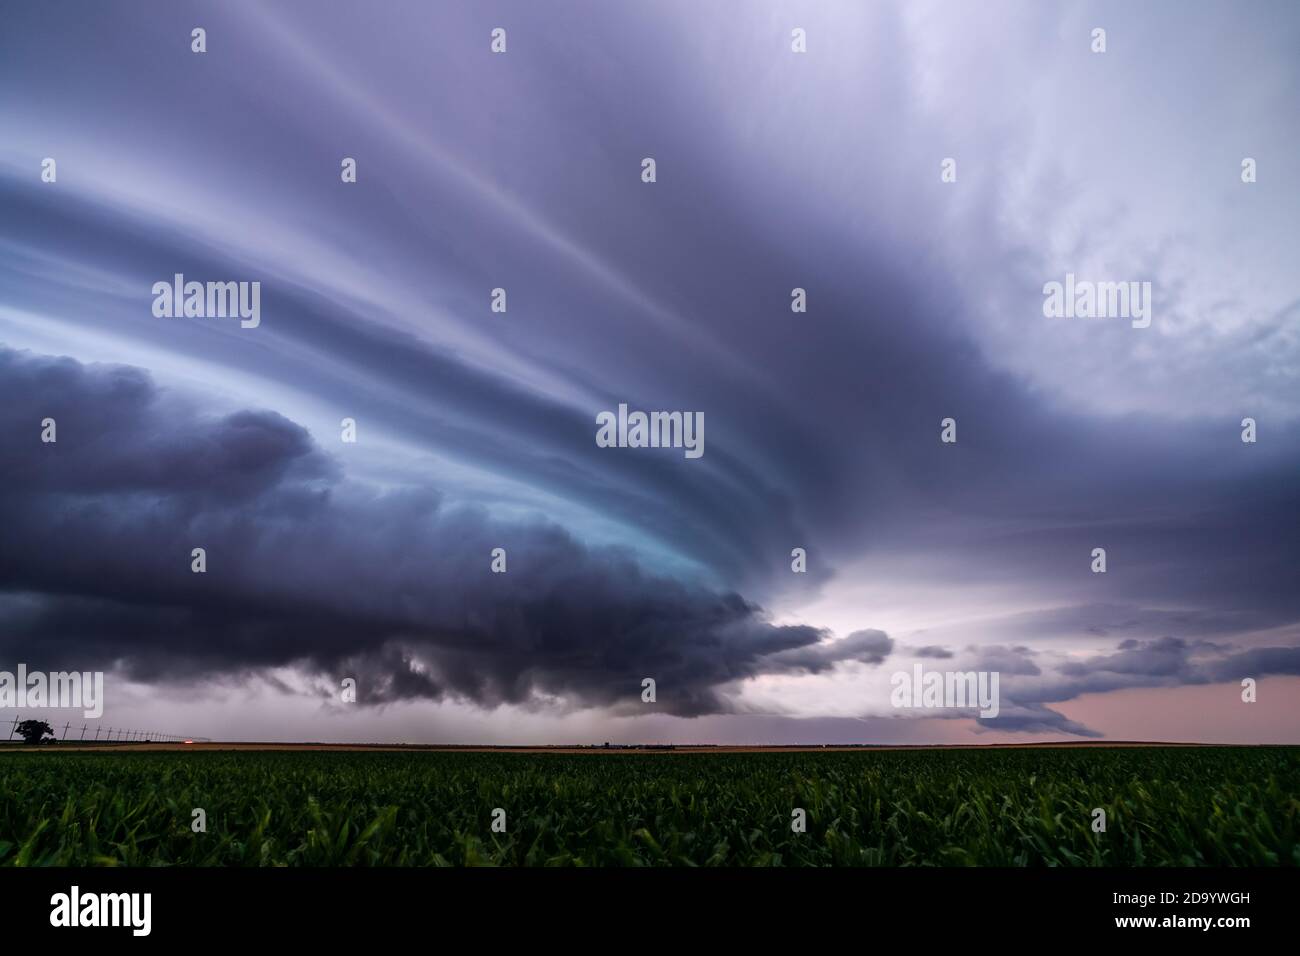 Des nuages spectaculaires et des orages de supercellules orageux au-dessus d'un champ près de Bucklin, Kansas Banque D'Images